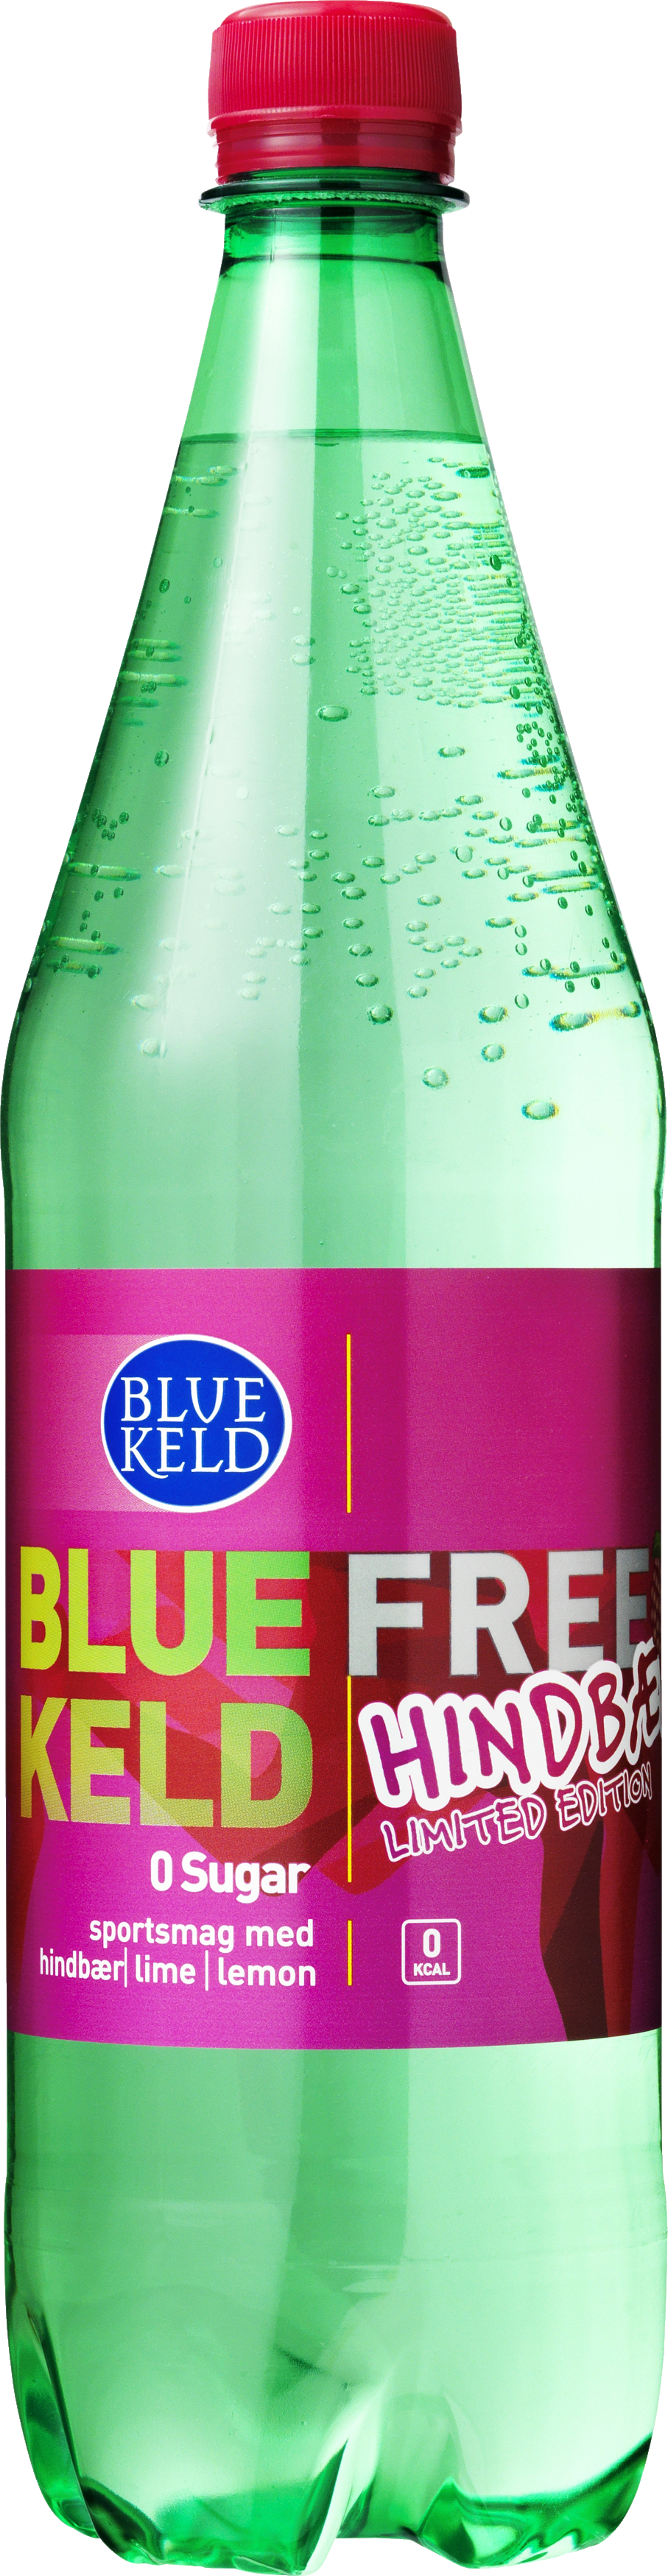 Teoretisk nøgen Tomat Blue Keld Free Hindbær/Lime/Lemon 100 cl. - SODAVAND, SAFT & VAND - VIN MED  MERE .DK